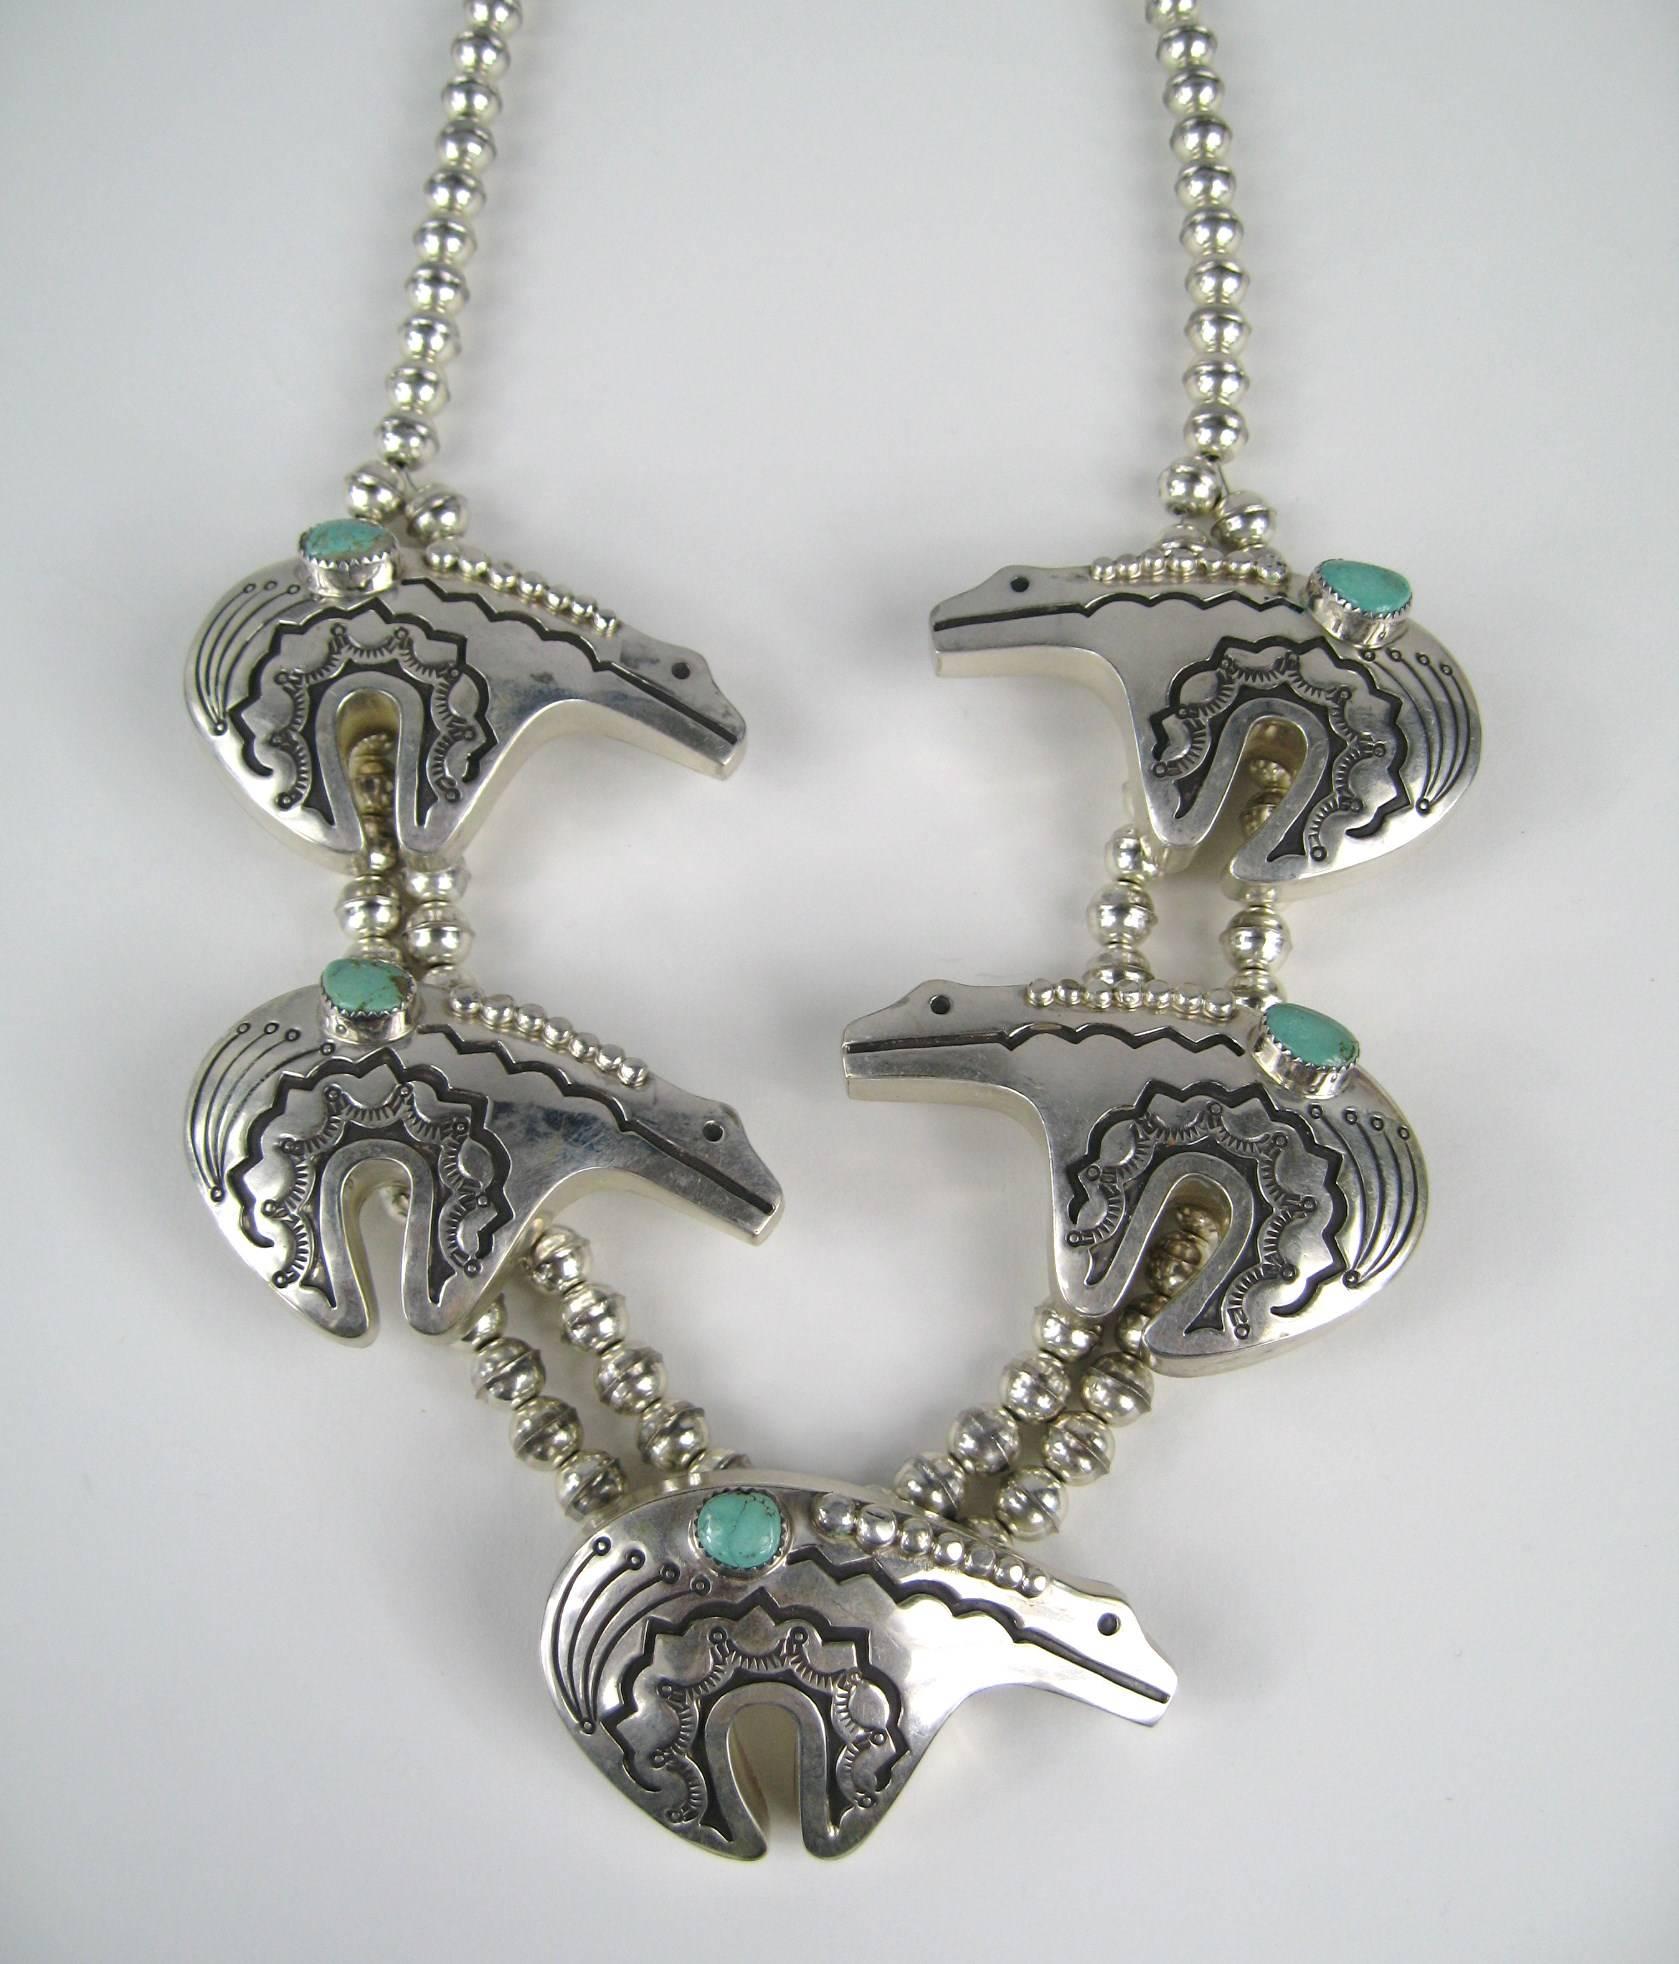 Dies ist ein fantastisches Stück tragbare Kunst Native American ~ Bear Fetish Halskette in Sterling Silber. Ca. 1970-80er Jahre. Große detaillierte Bär mit Lünette gefassten Türkis Stein im gesamten. Misst 26 Zoll von Ende zu Ende. Jeder Bär misst